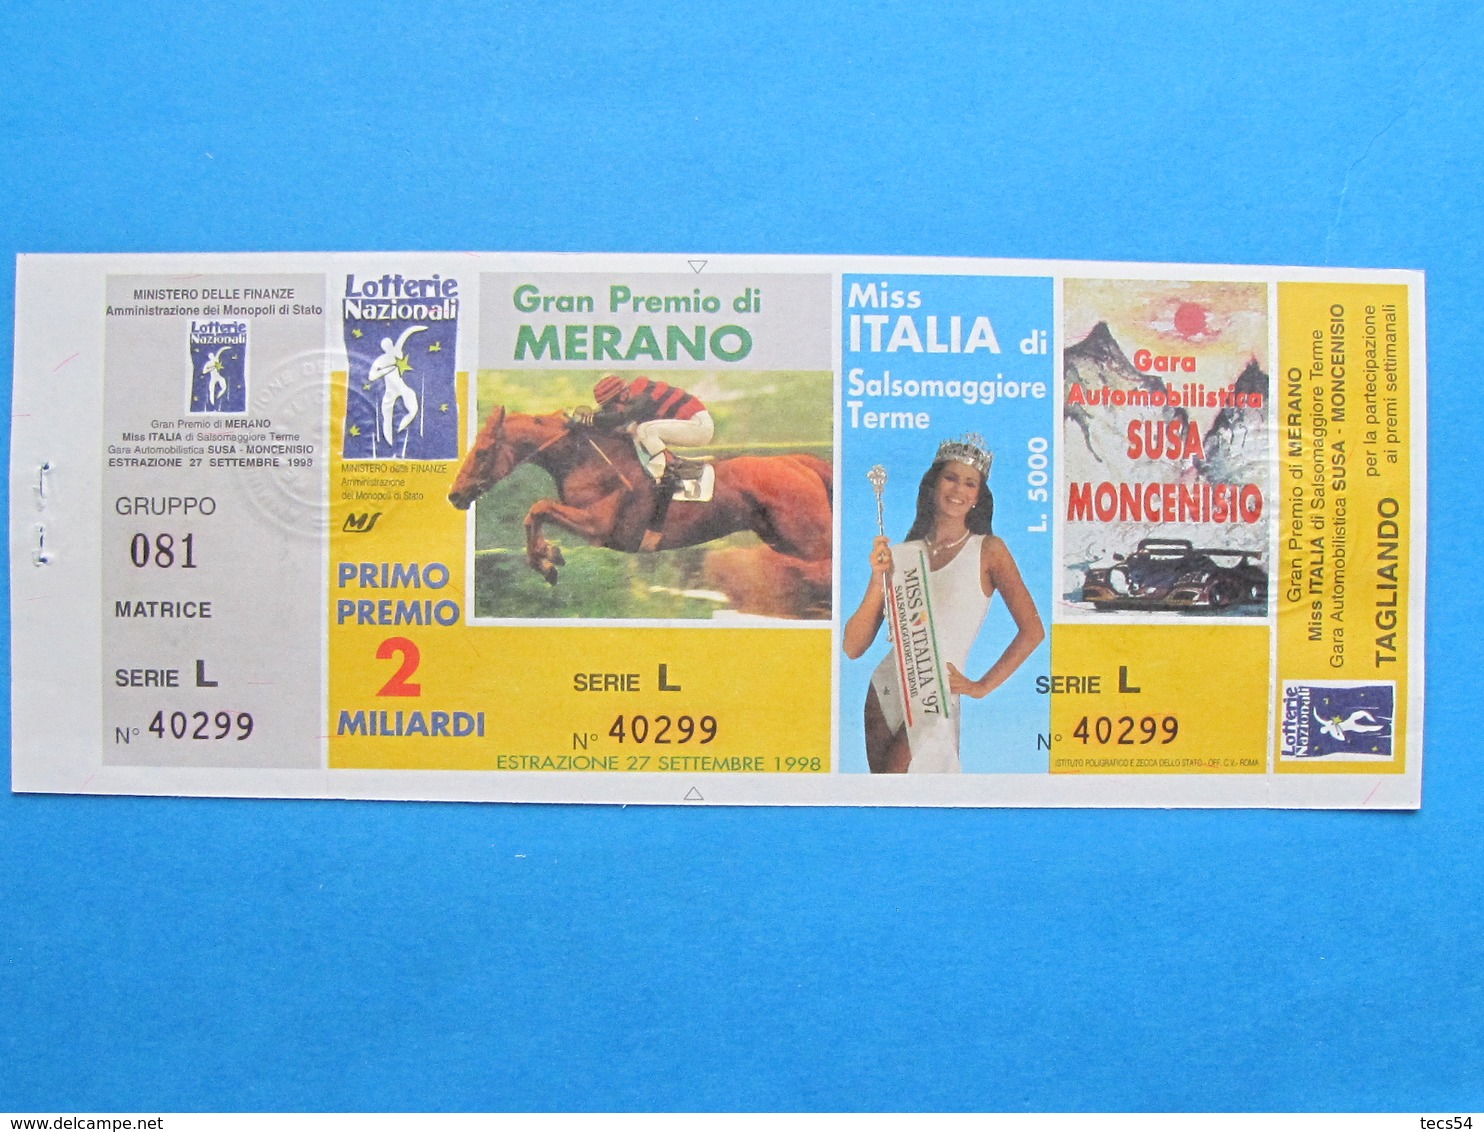 BIGLIETTO LOTTERIA MERANO MISS ITALIA SUSA MONCENISIO 1998 - COMPLETO DI MATRICE E TAGLIANDO FDS - Biglietti Della Lotteria